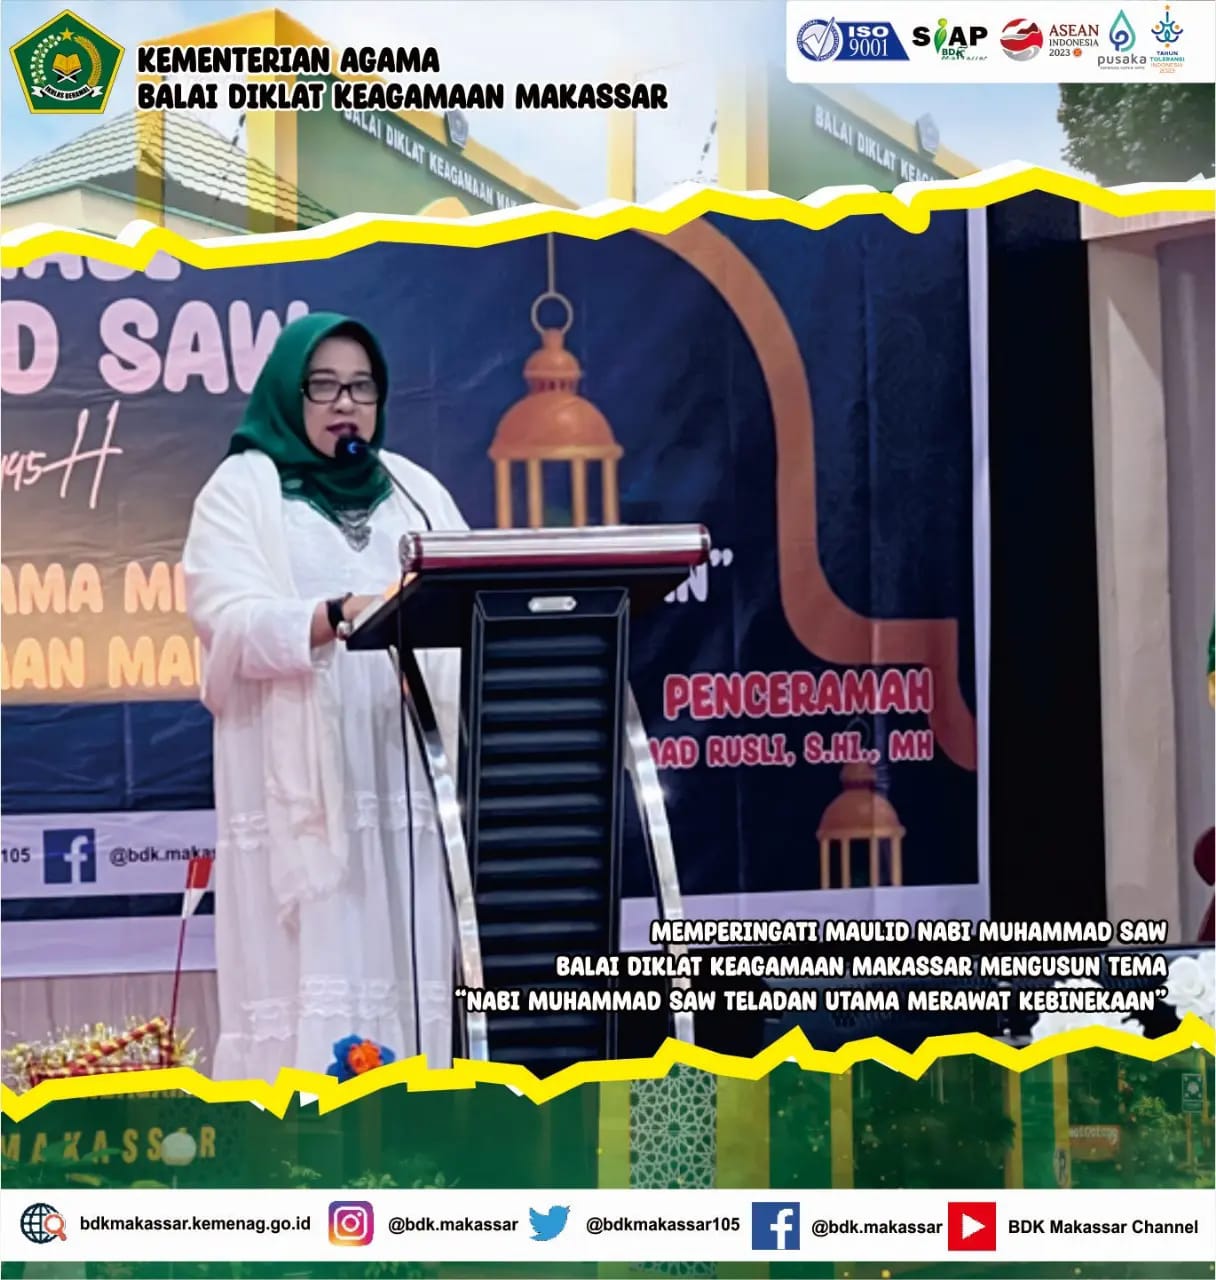 Nabi Muhammad SAW Teladan Utama Merawat Kebinekaan menjadi Tema Peringatan Maulid Nabi Muhammad saw di BDK Makassar.